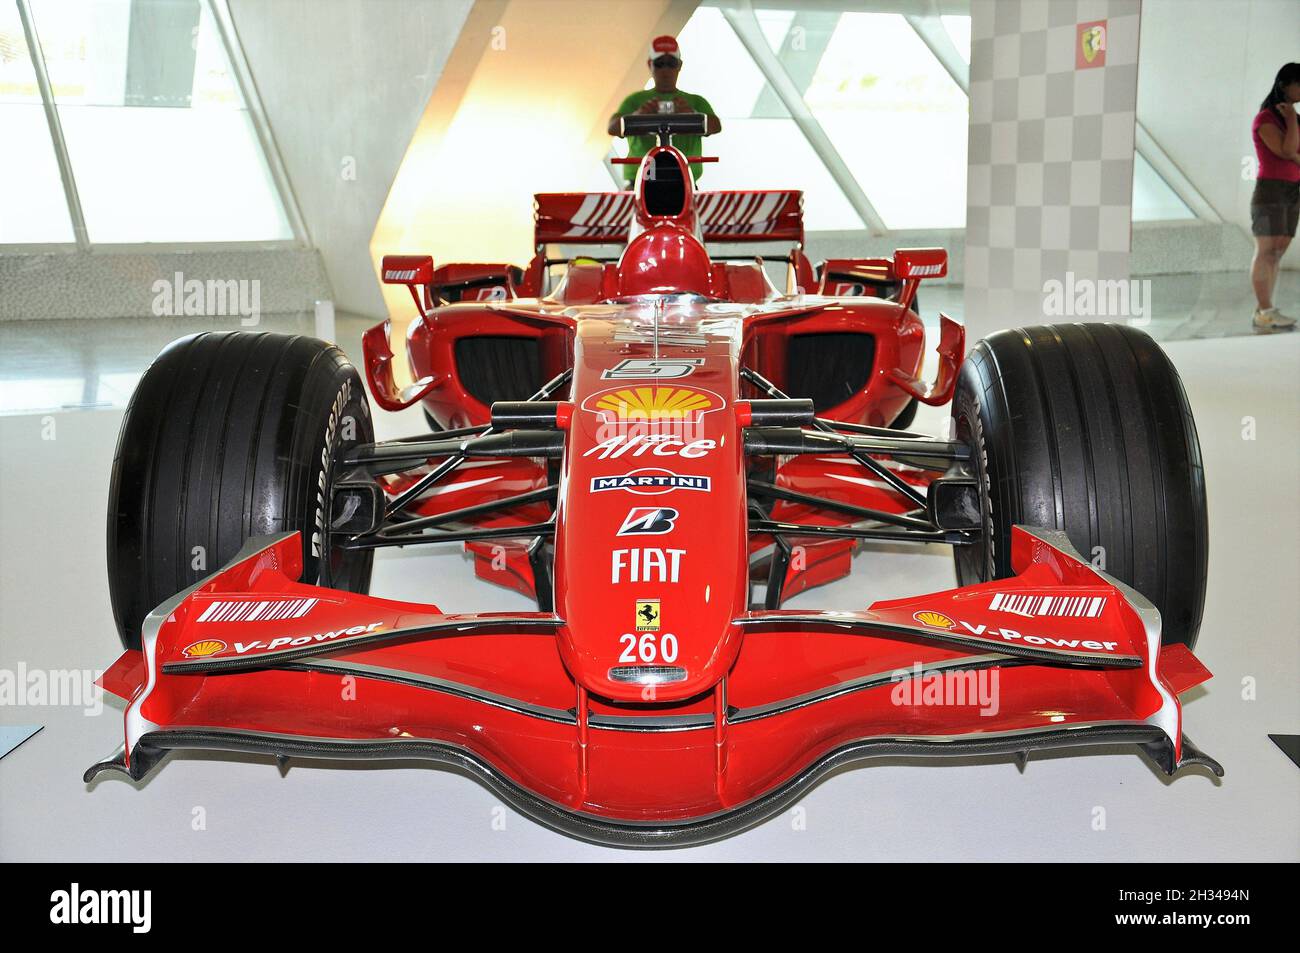 Exposition de Ferrari Formule 1 au musée des sciences de Valence, Communauté Valencienne, Espagne Banque D'Images